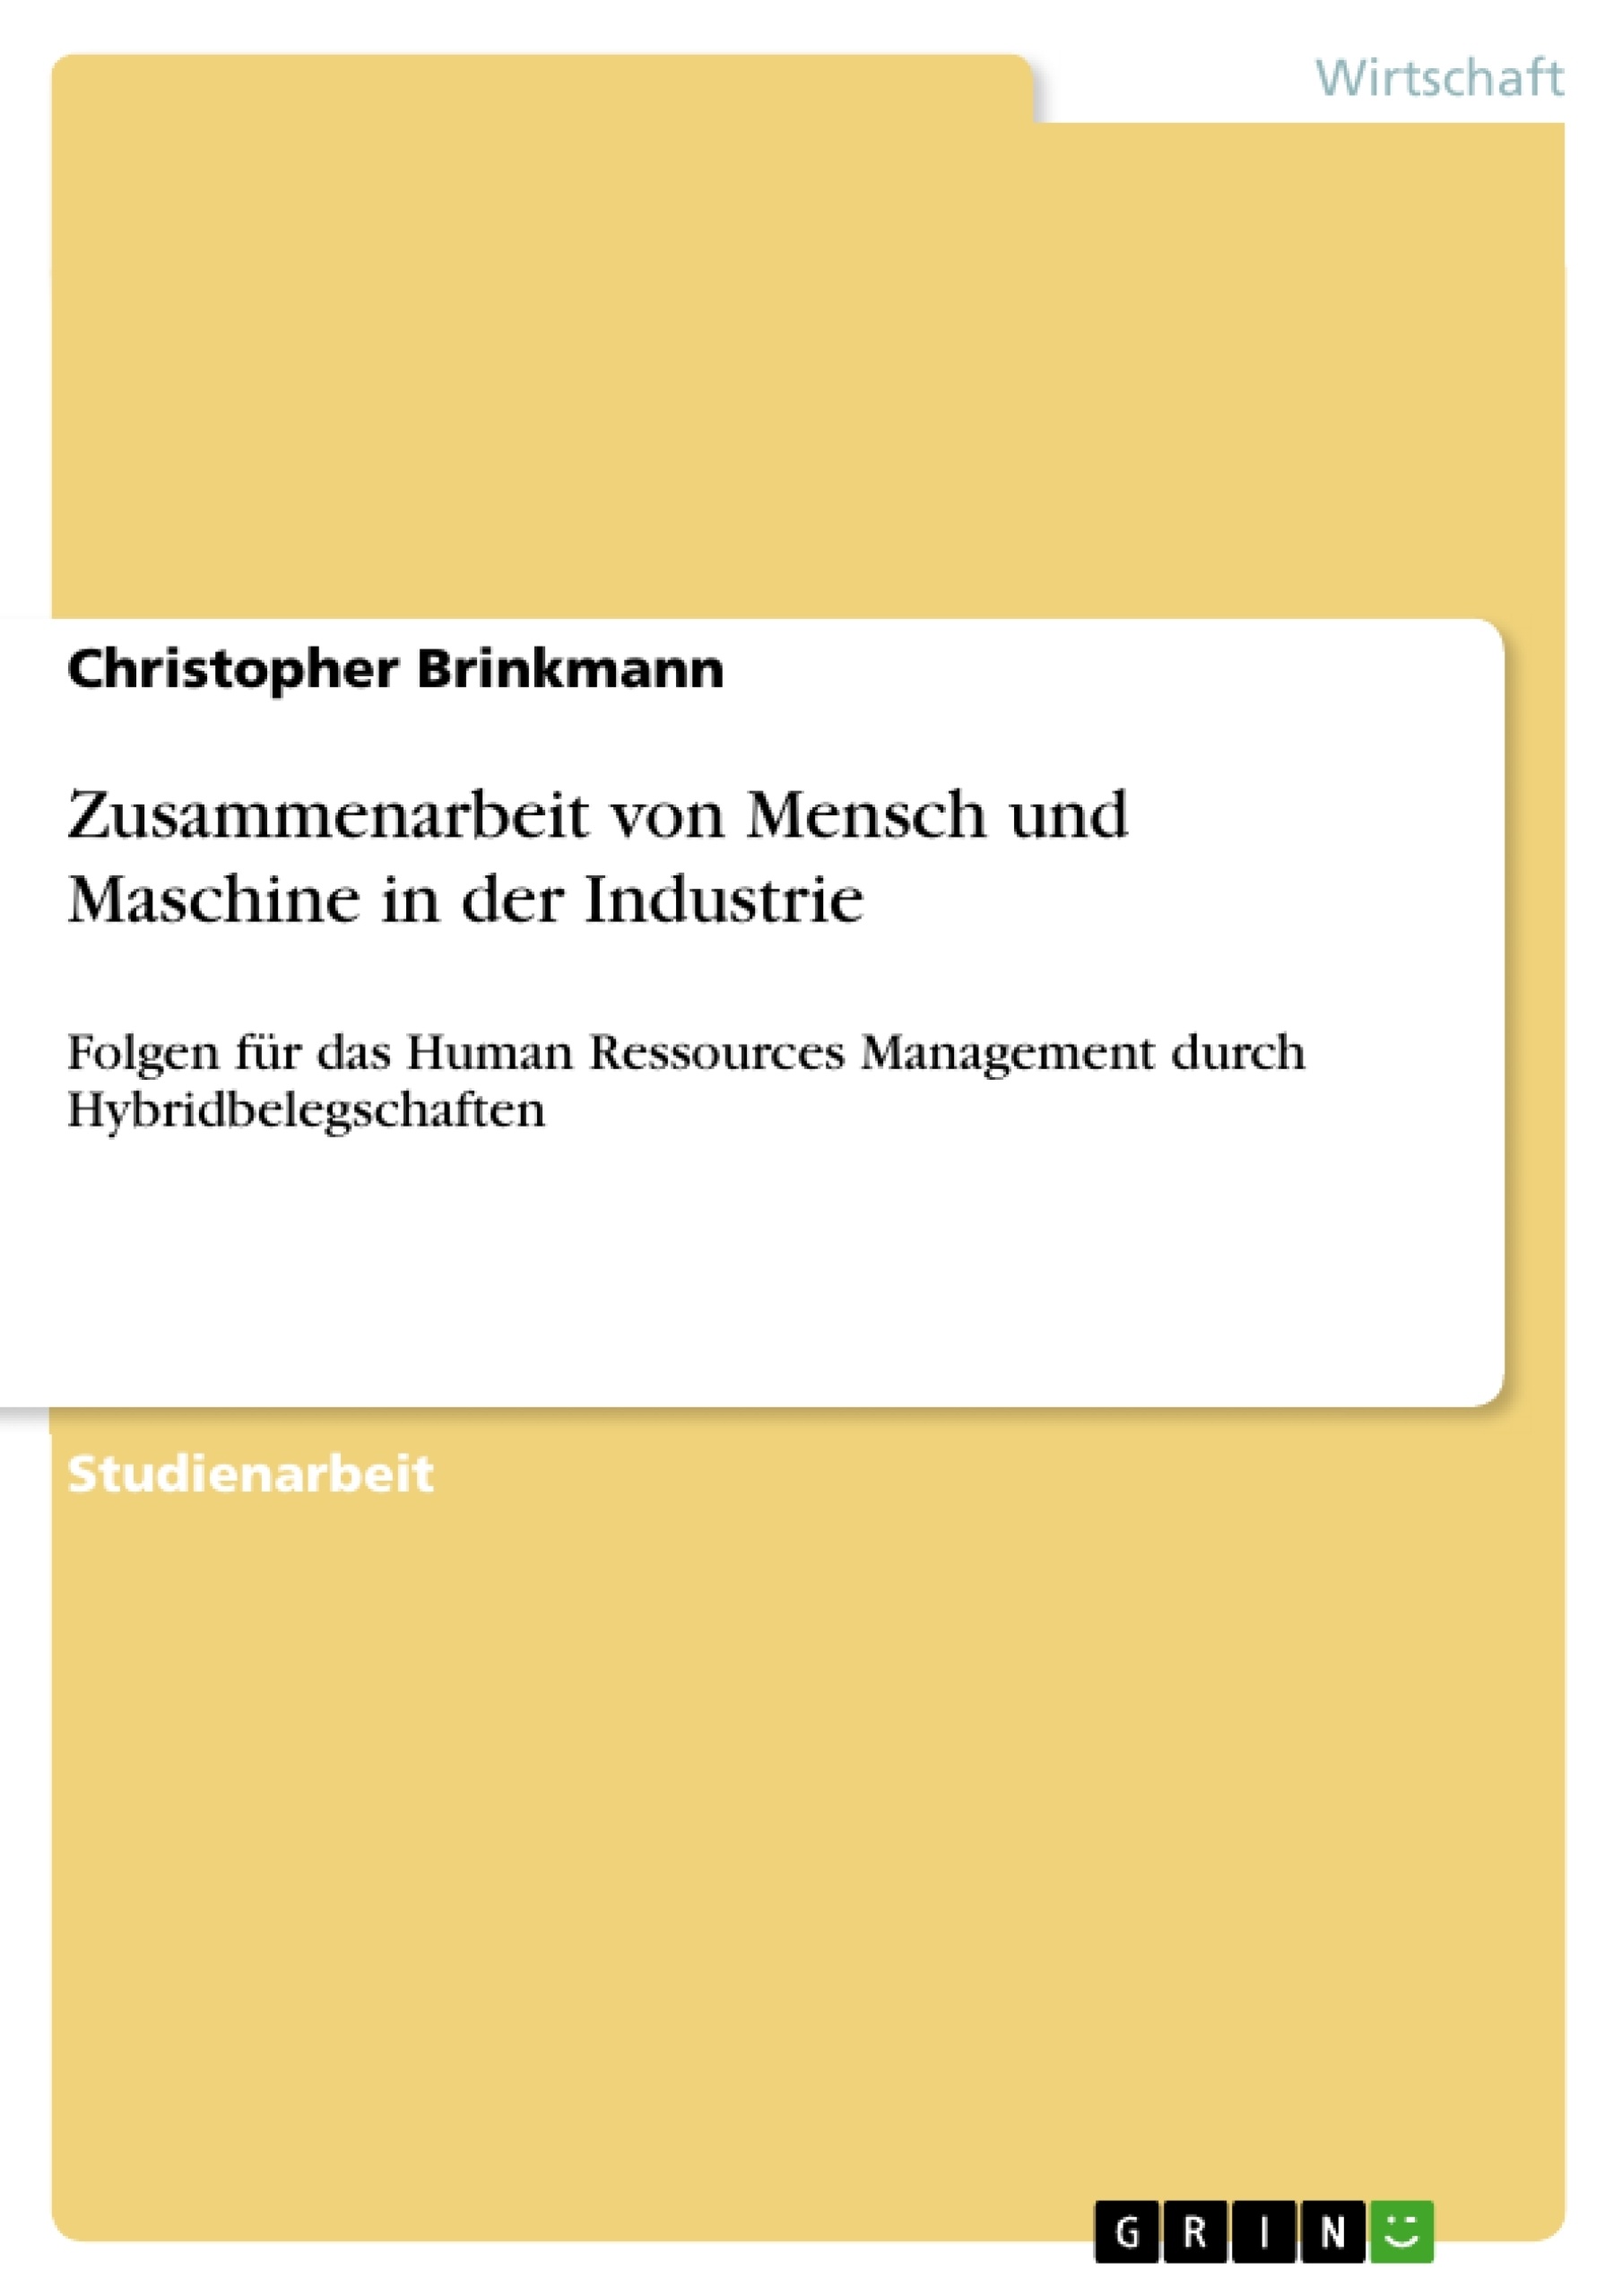 Titre: Zusammenarbeit von Mensch und Maschine in der Industrie